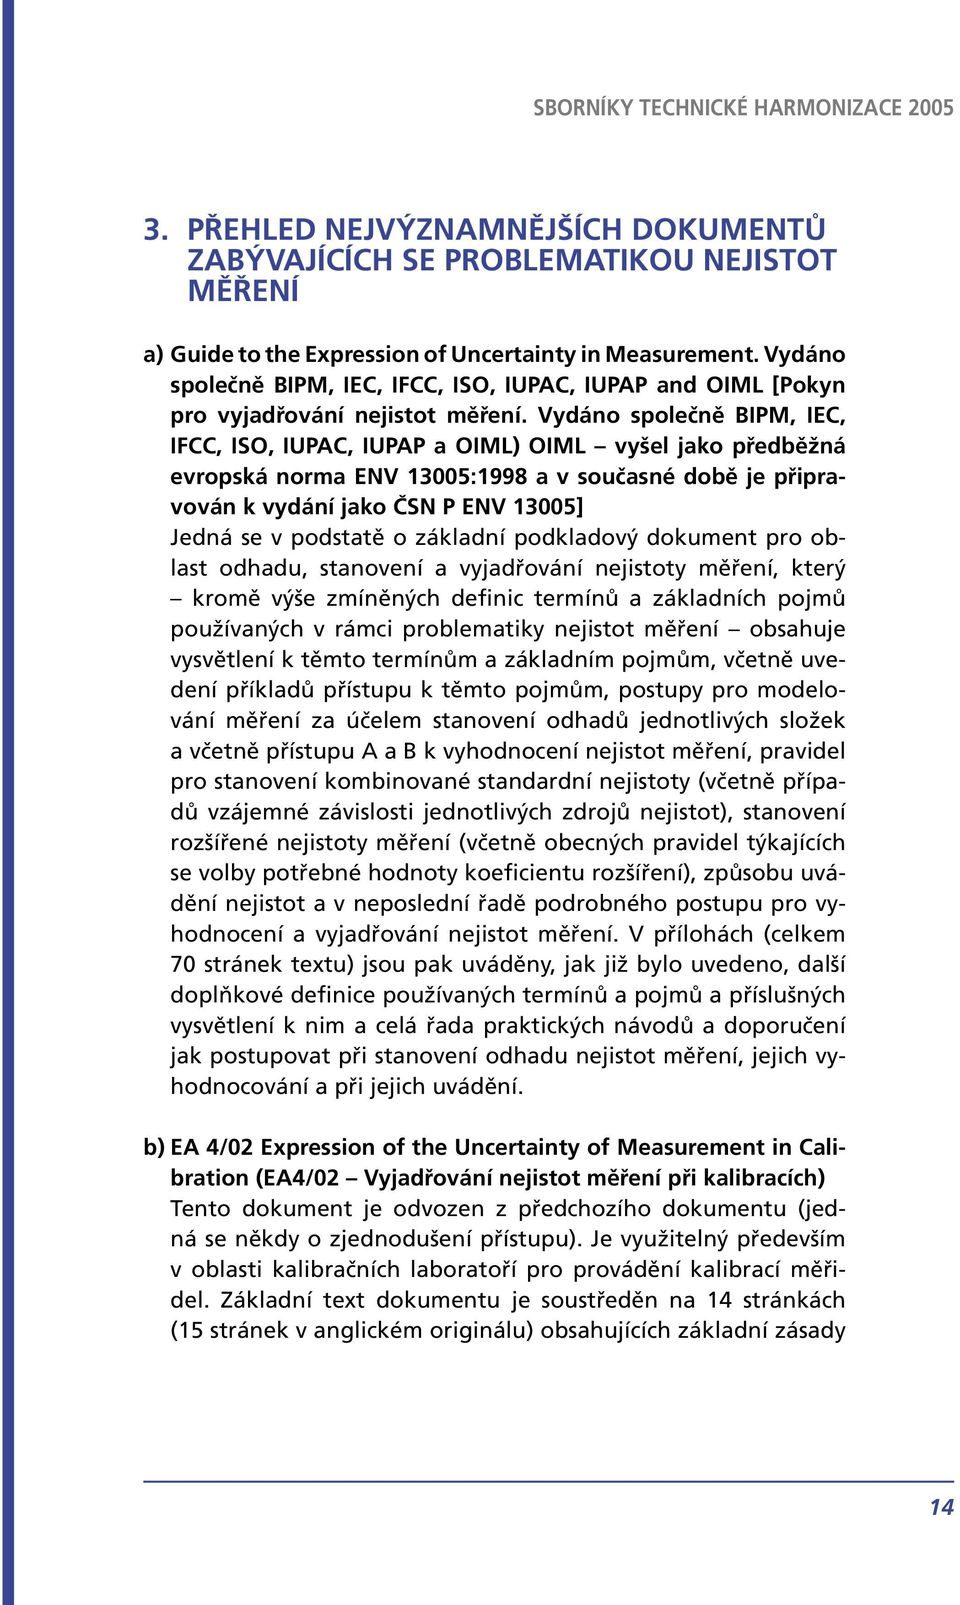 Vydáno společně BIPM, IEC, IFCC, ISO, IUPAC, IUPAP a OIML) OIML vyšel jako předběžná evropská norma ENV 13005:1998 a v současné době je připravován k vydání jako ČSN P ENV 13005] Jedná se v podstatě